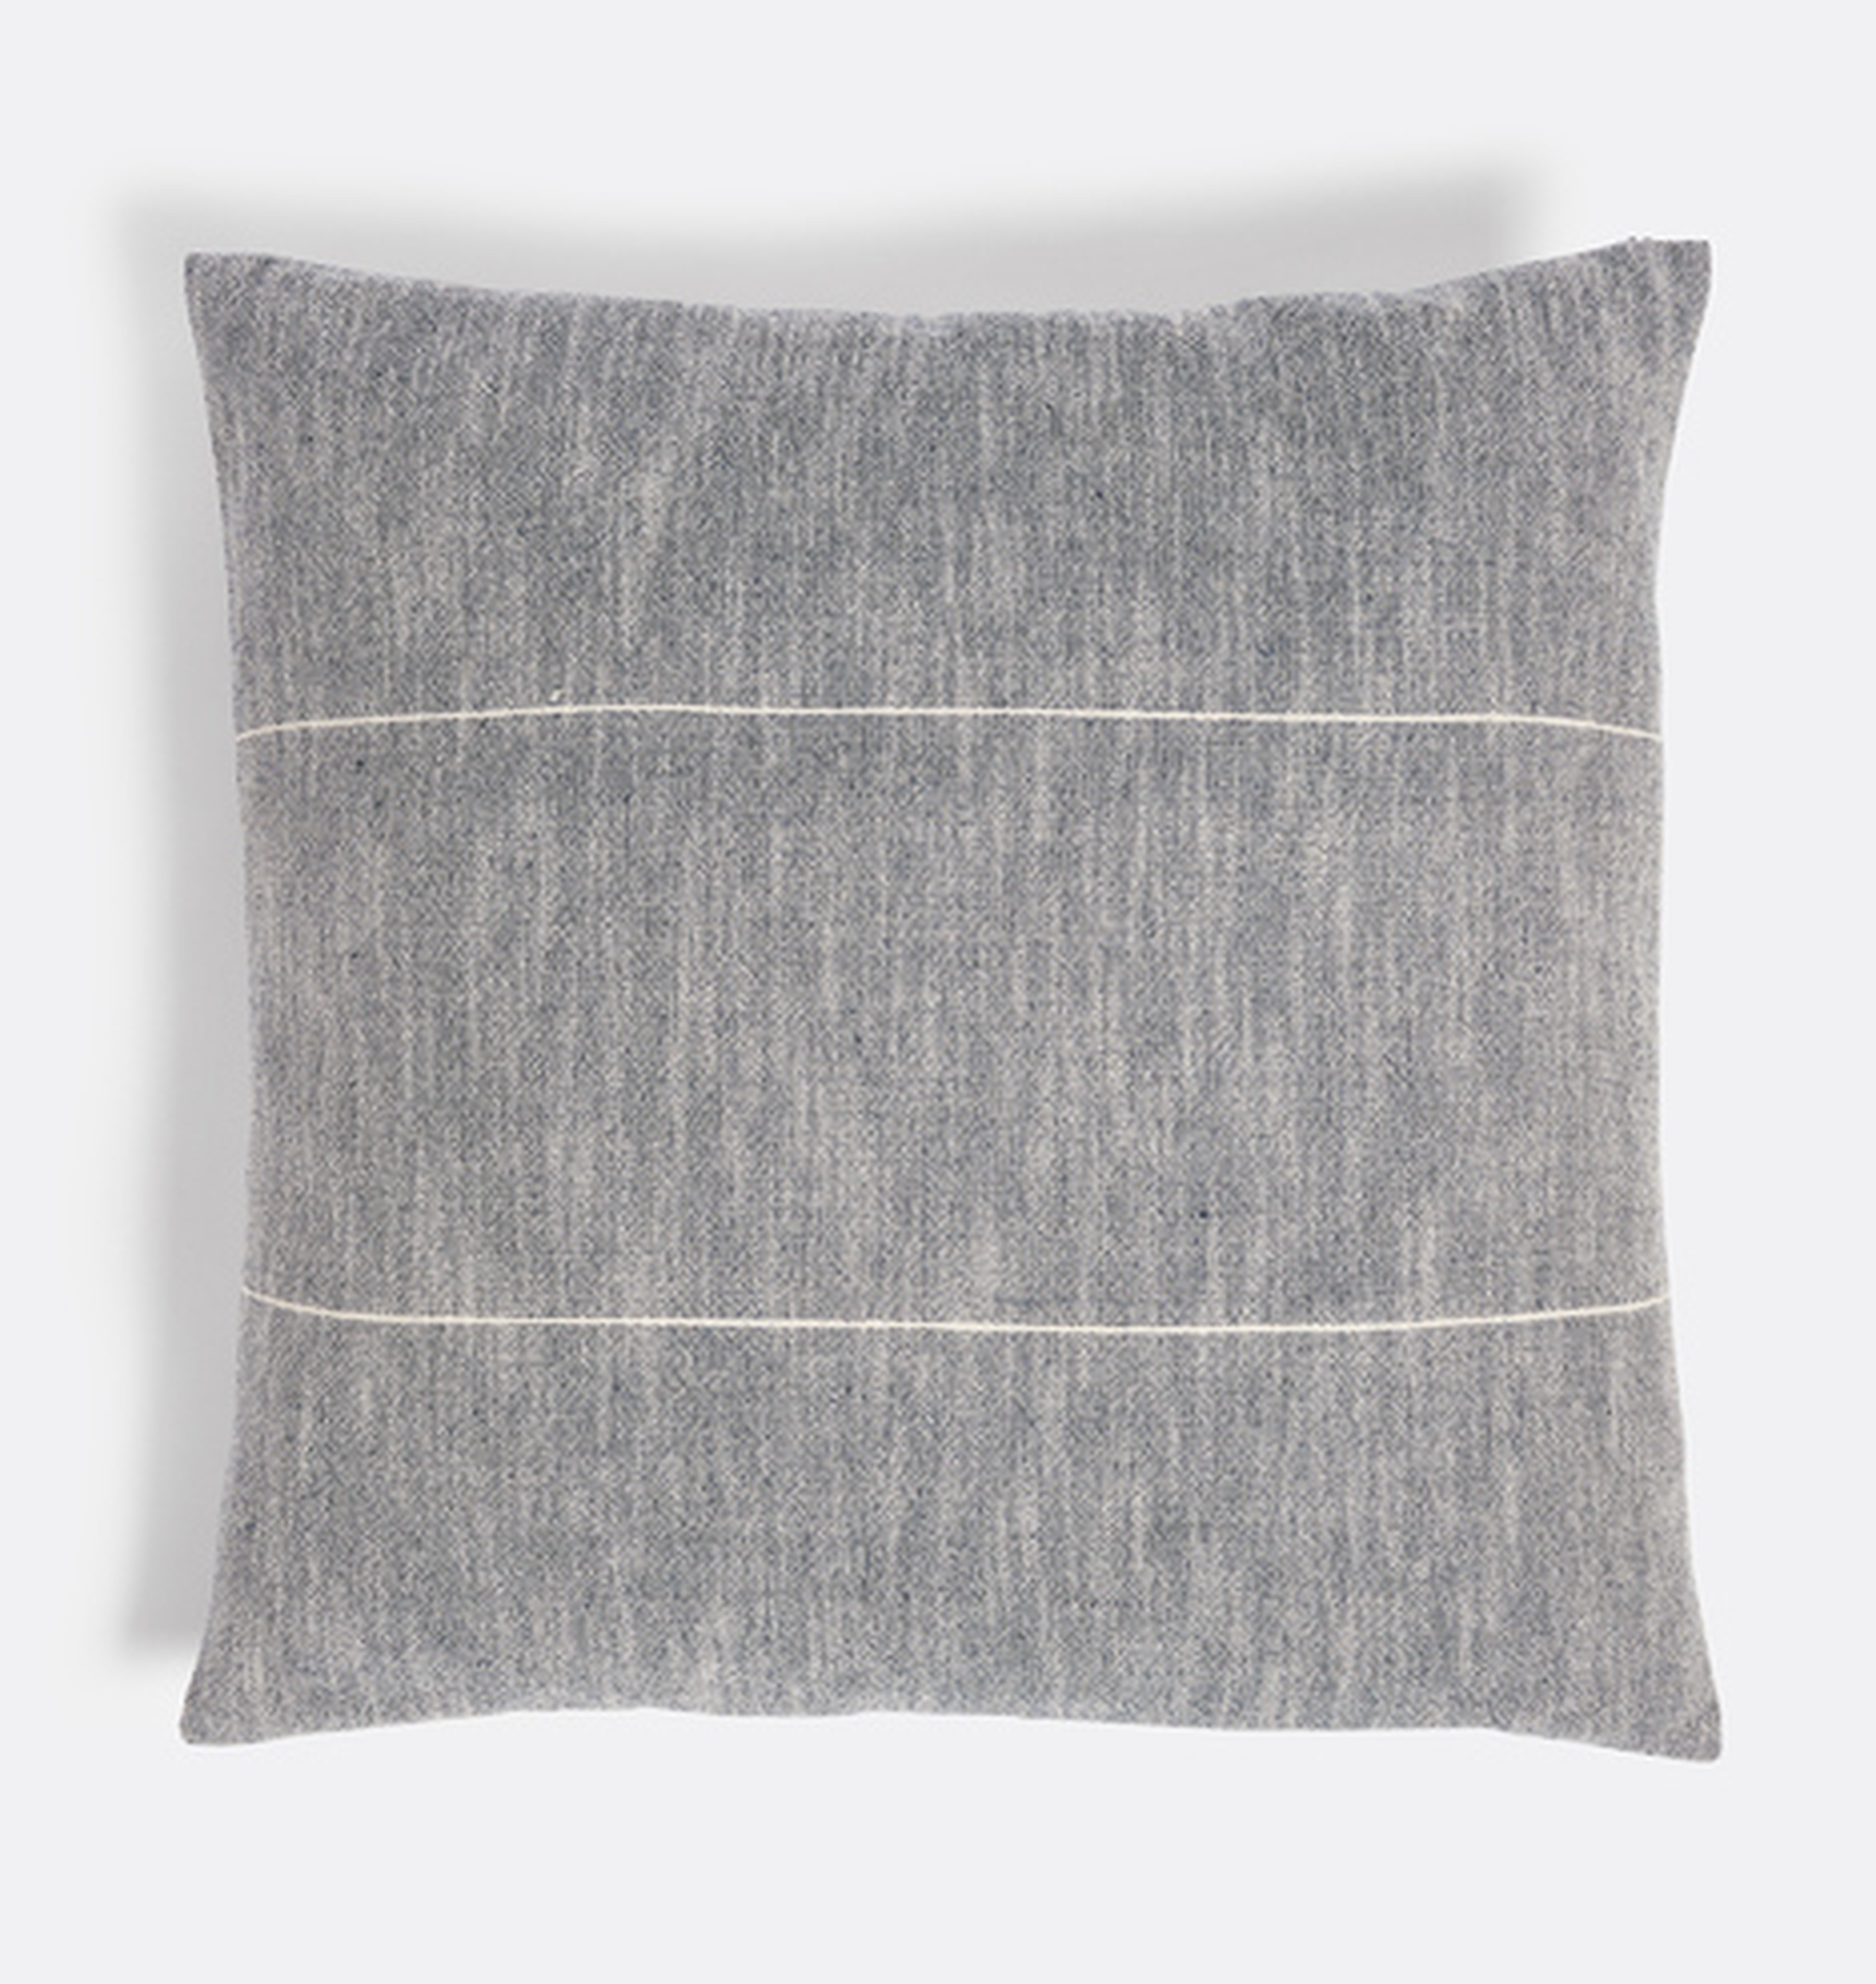 Woven Linen and Cotton Pillow Cover - Rejuvenation